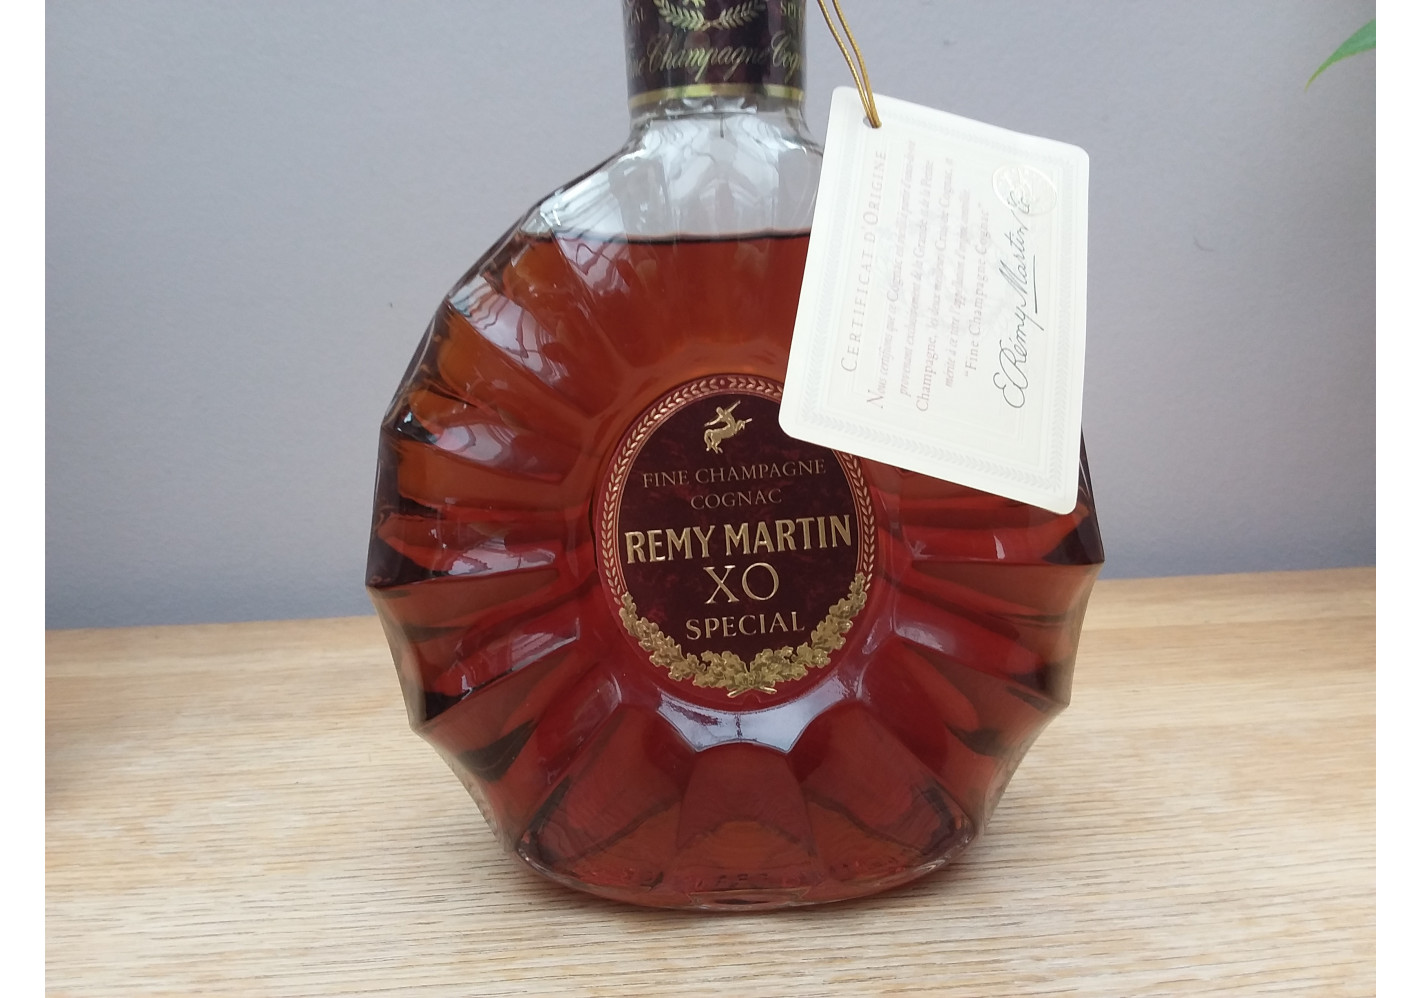 Xo special - Remy Martin Cognac